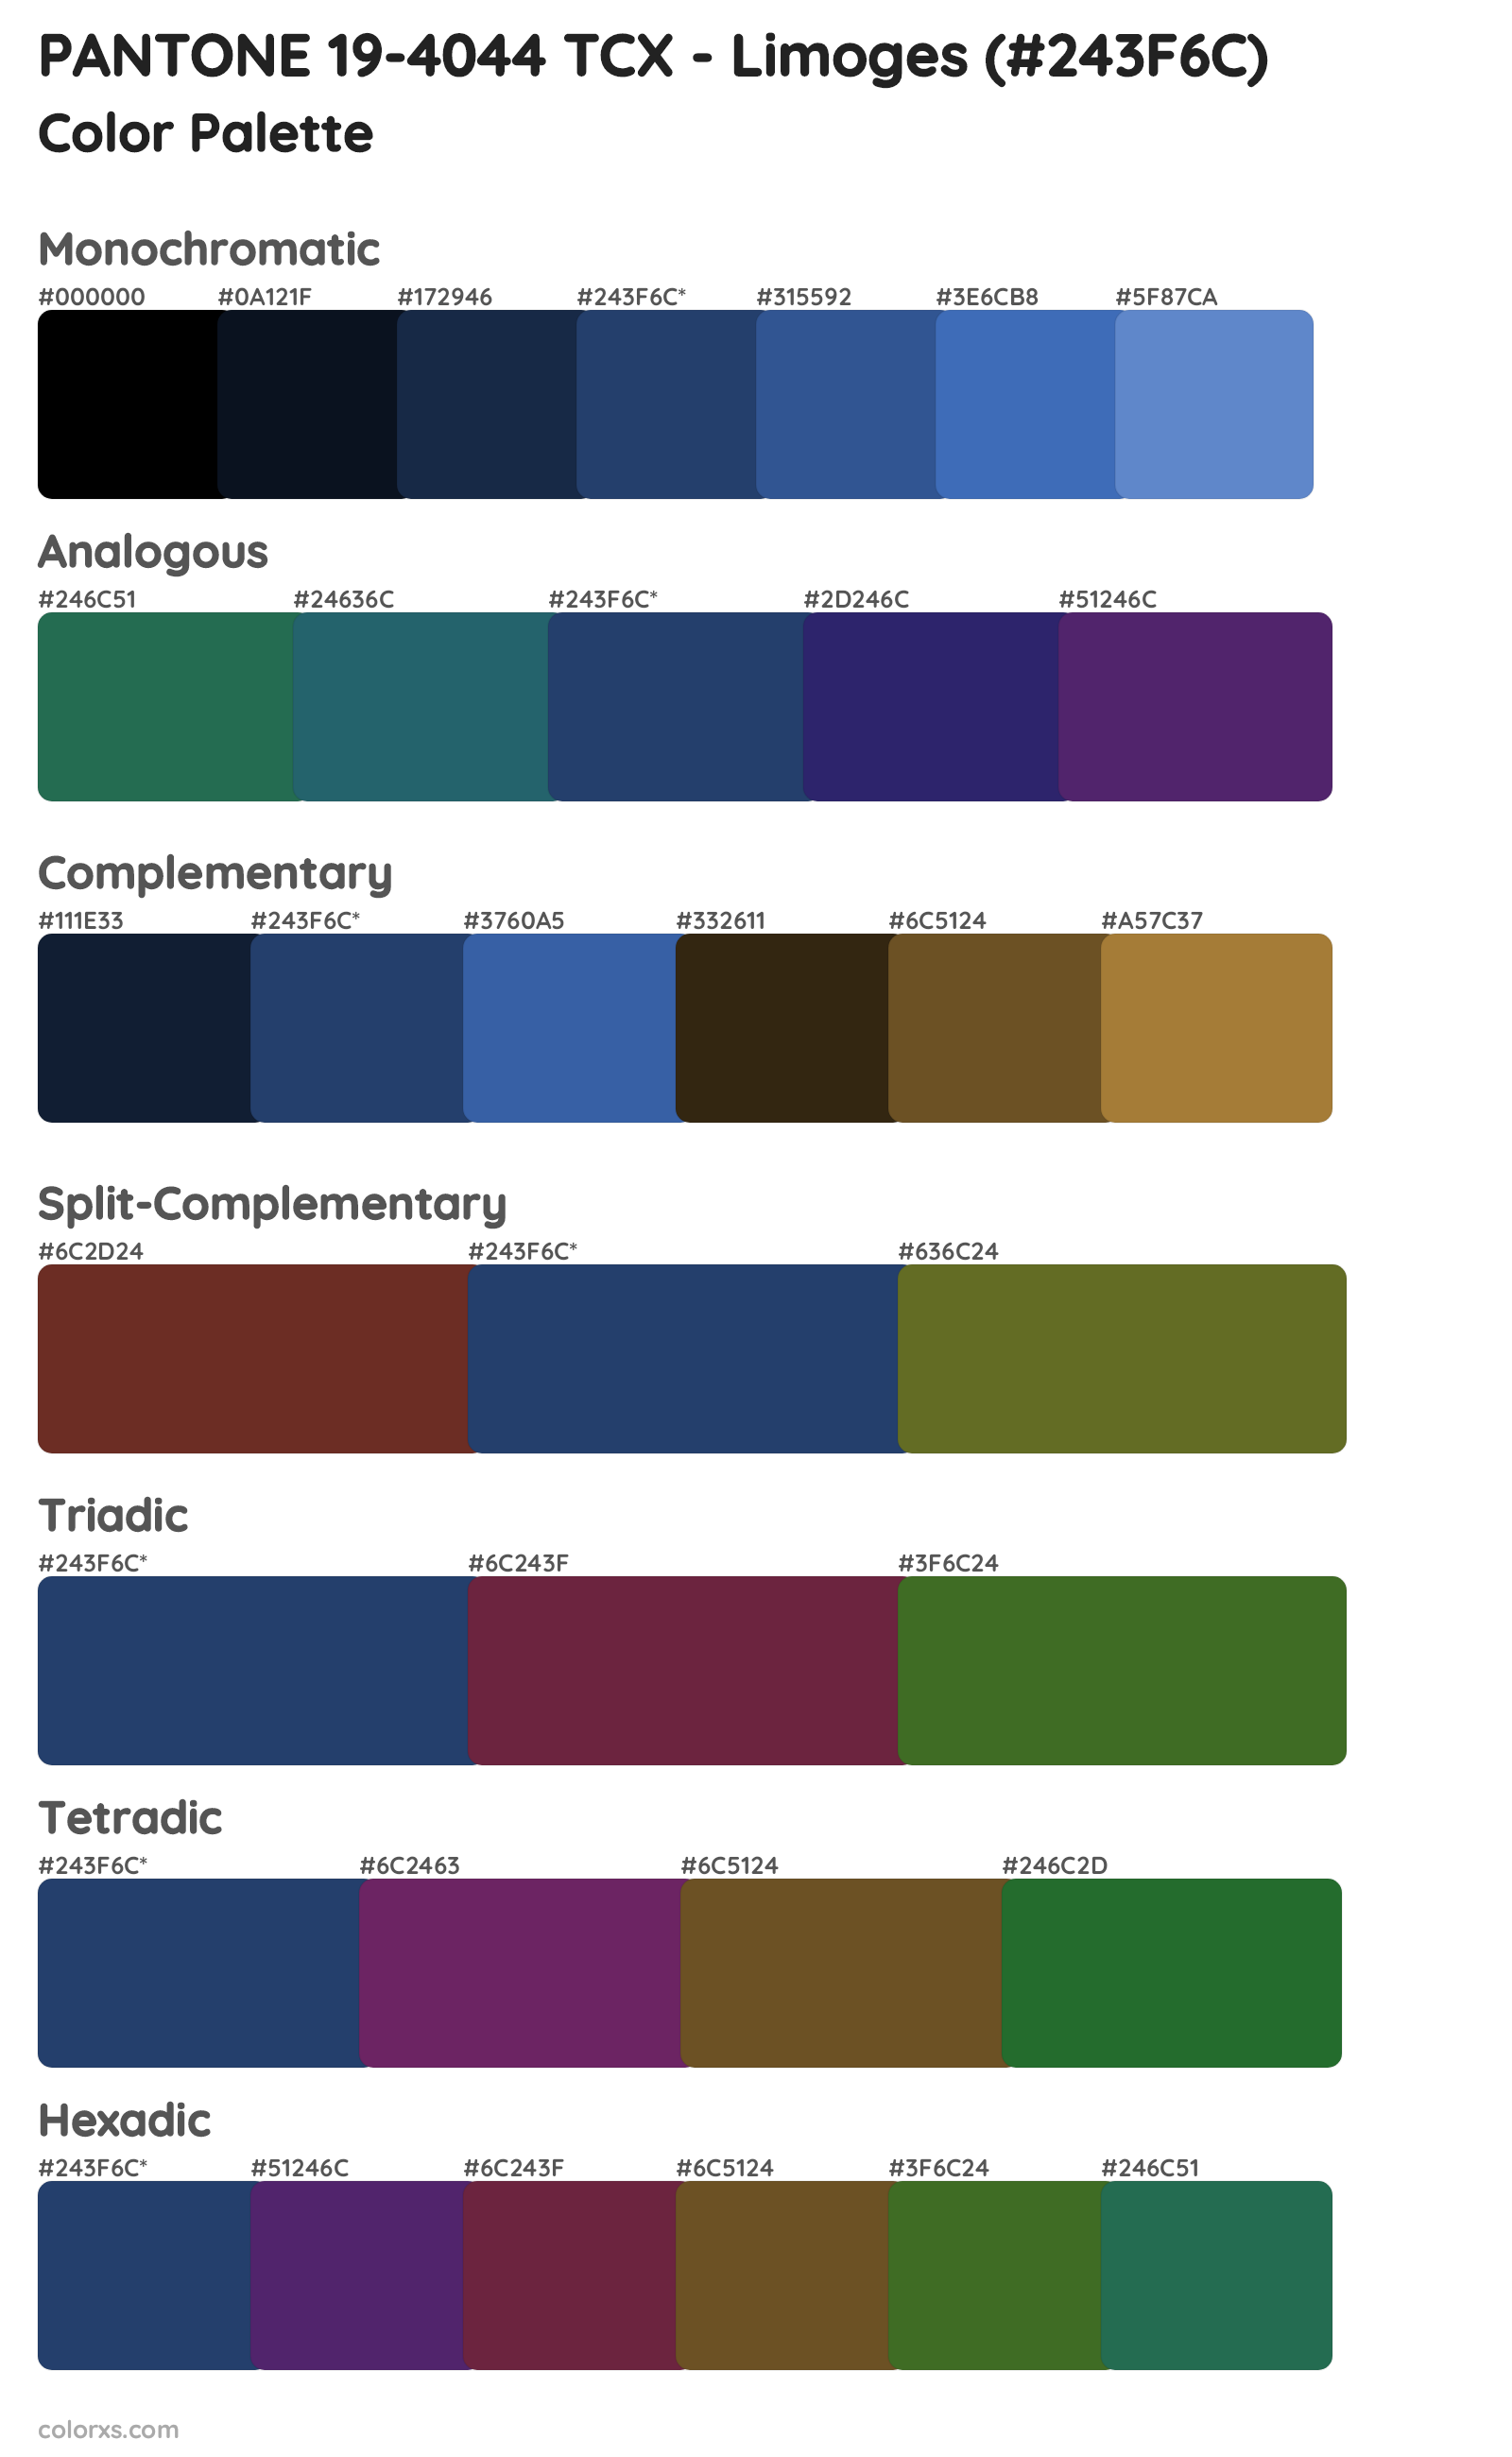 PANTONE 19-4044 TCX - Limoges Color Scheme Palettes